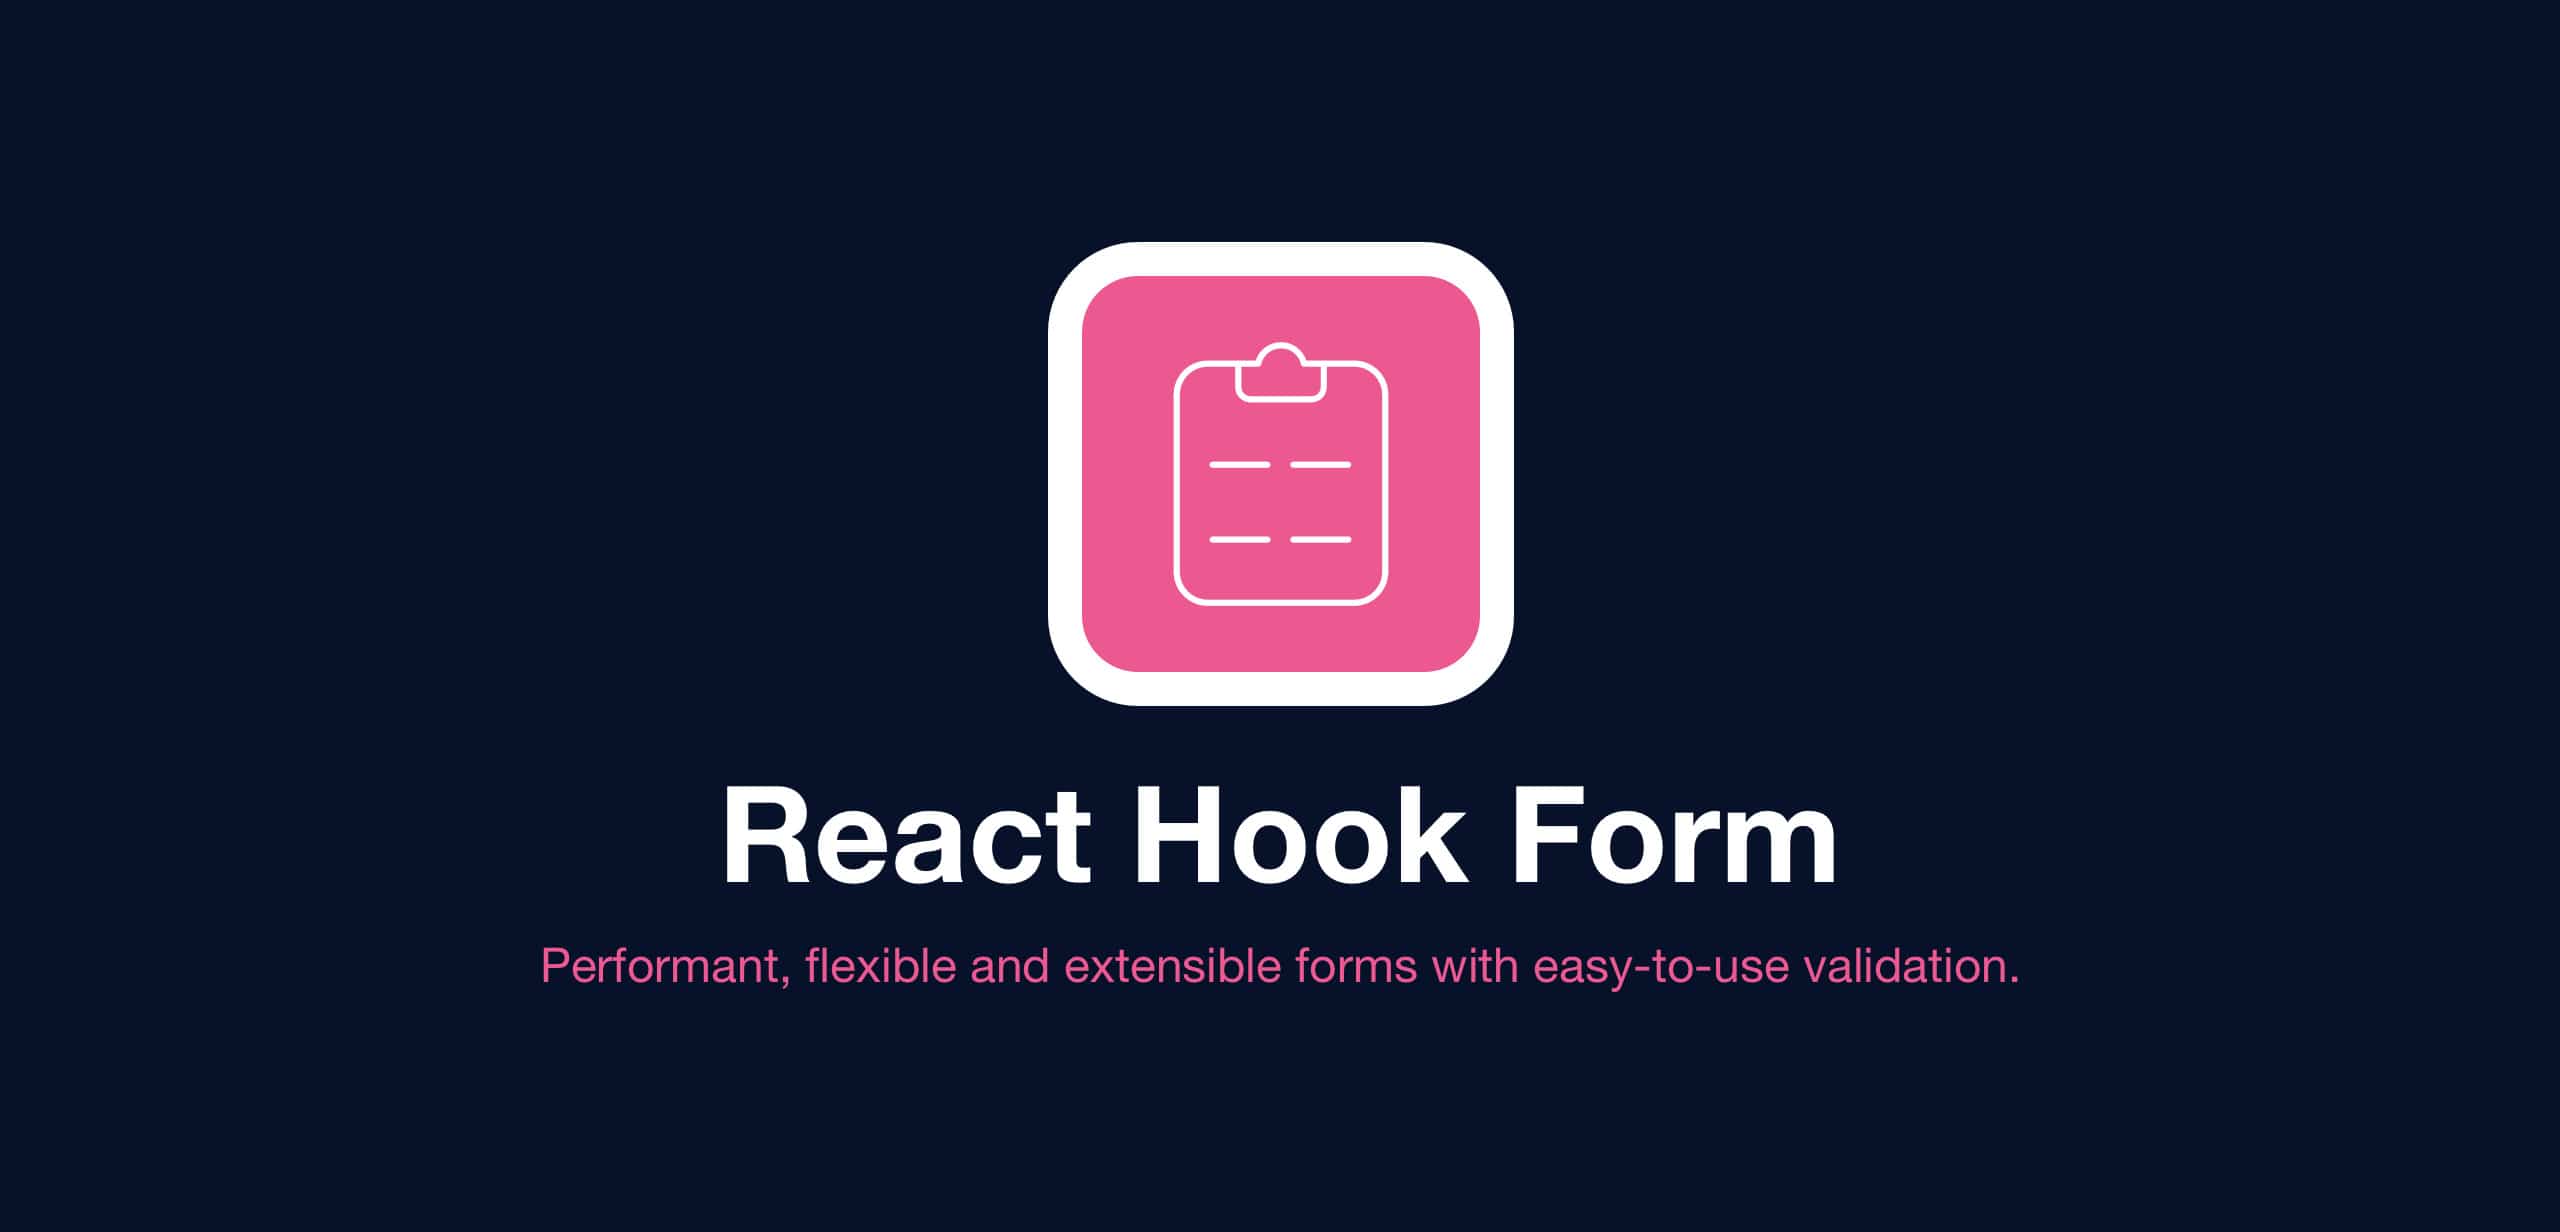 react hook form logo